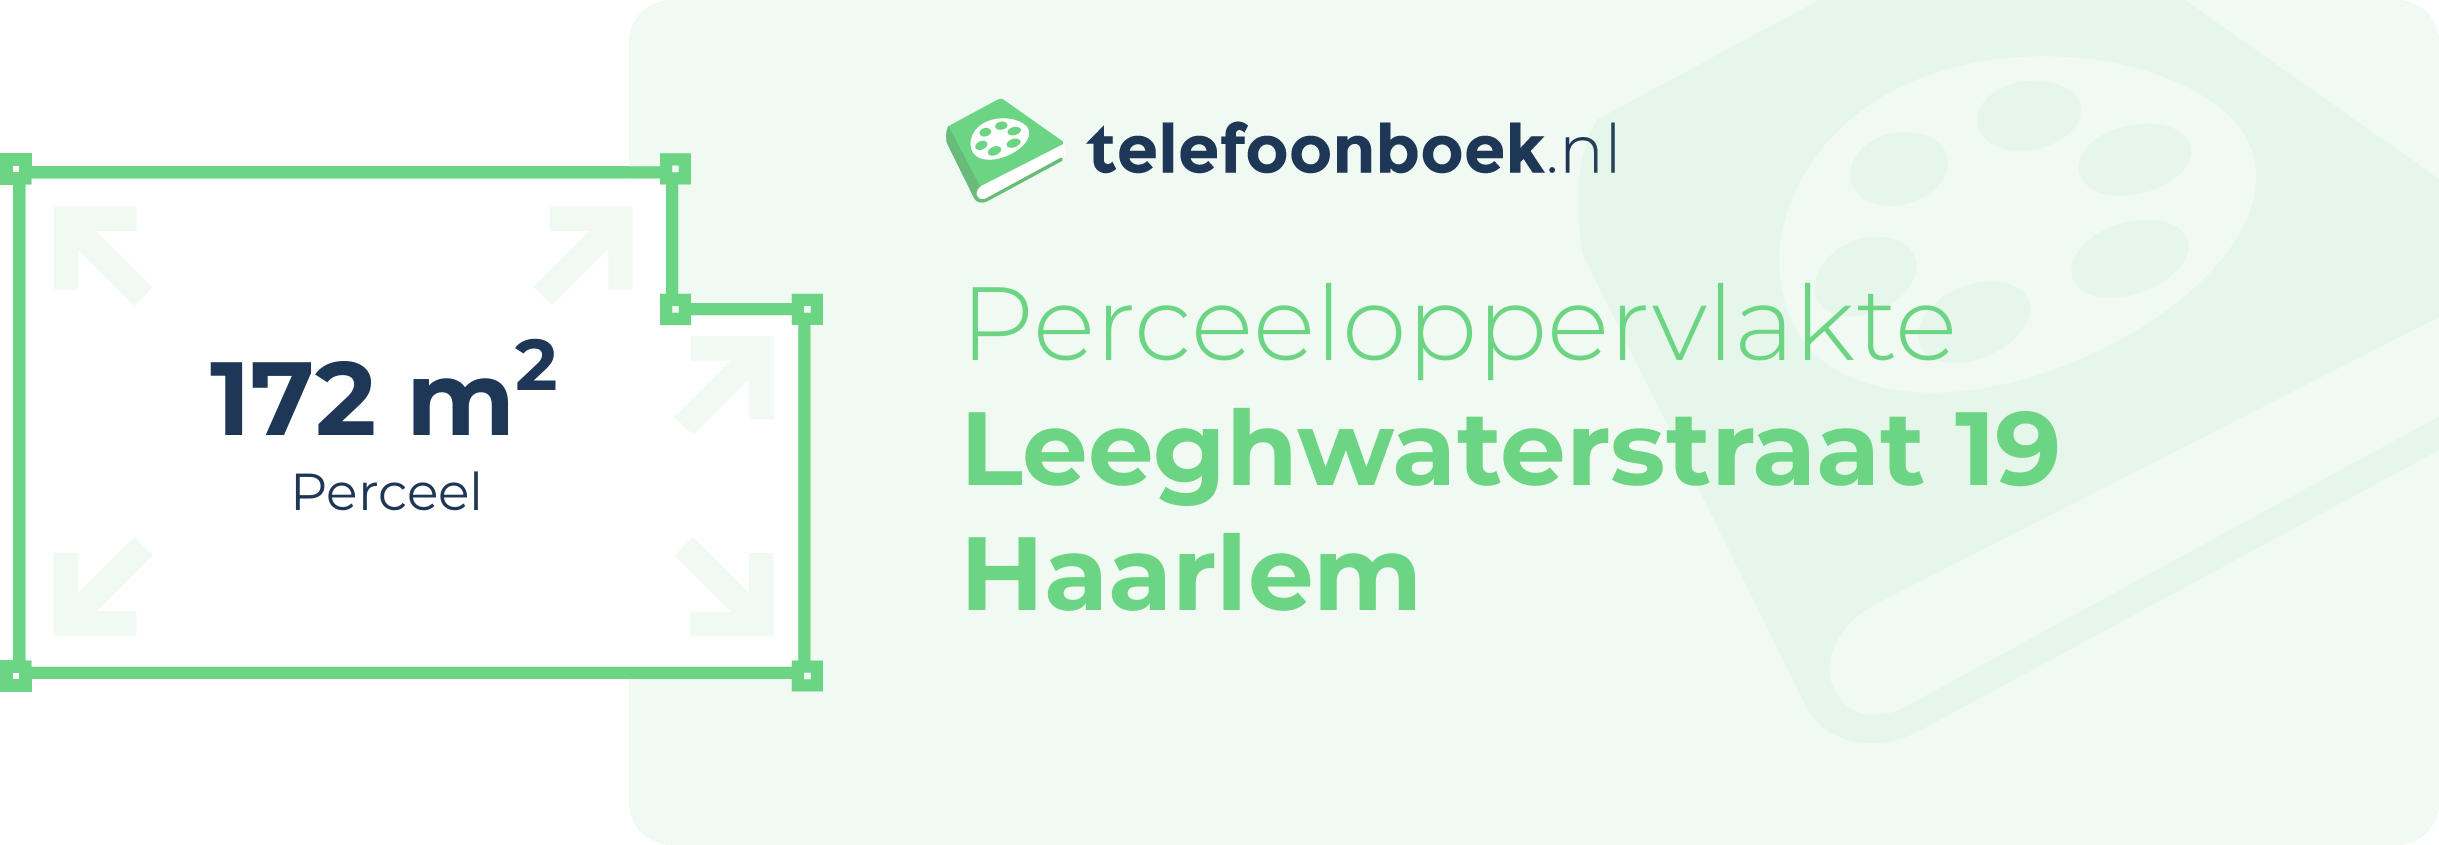 Perceeloppervlakte Leeghwaterstraat 19 Haarlem